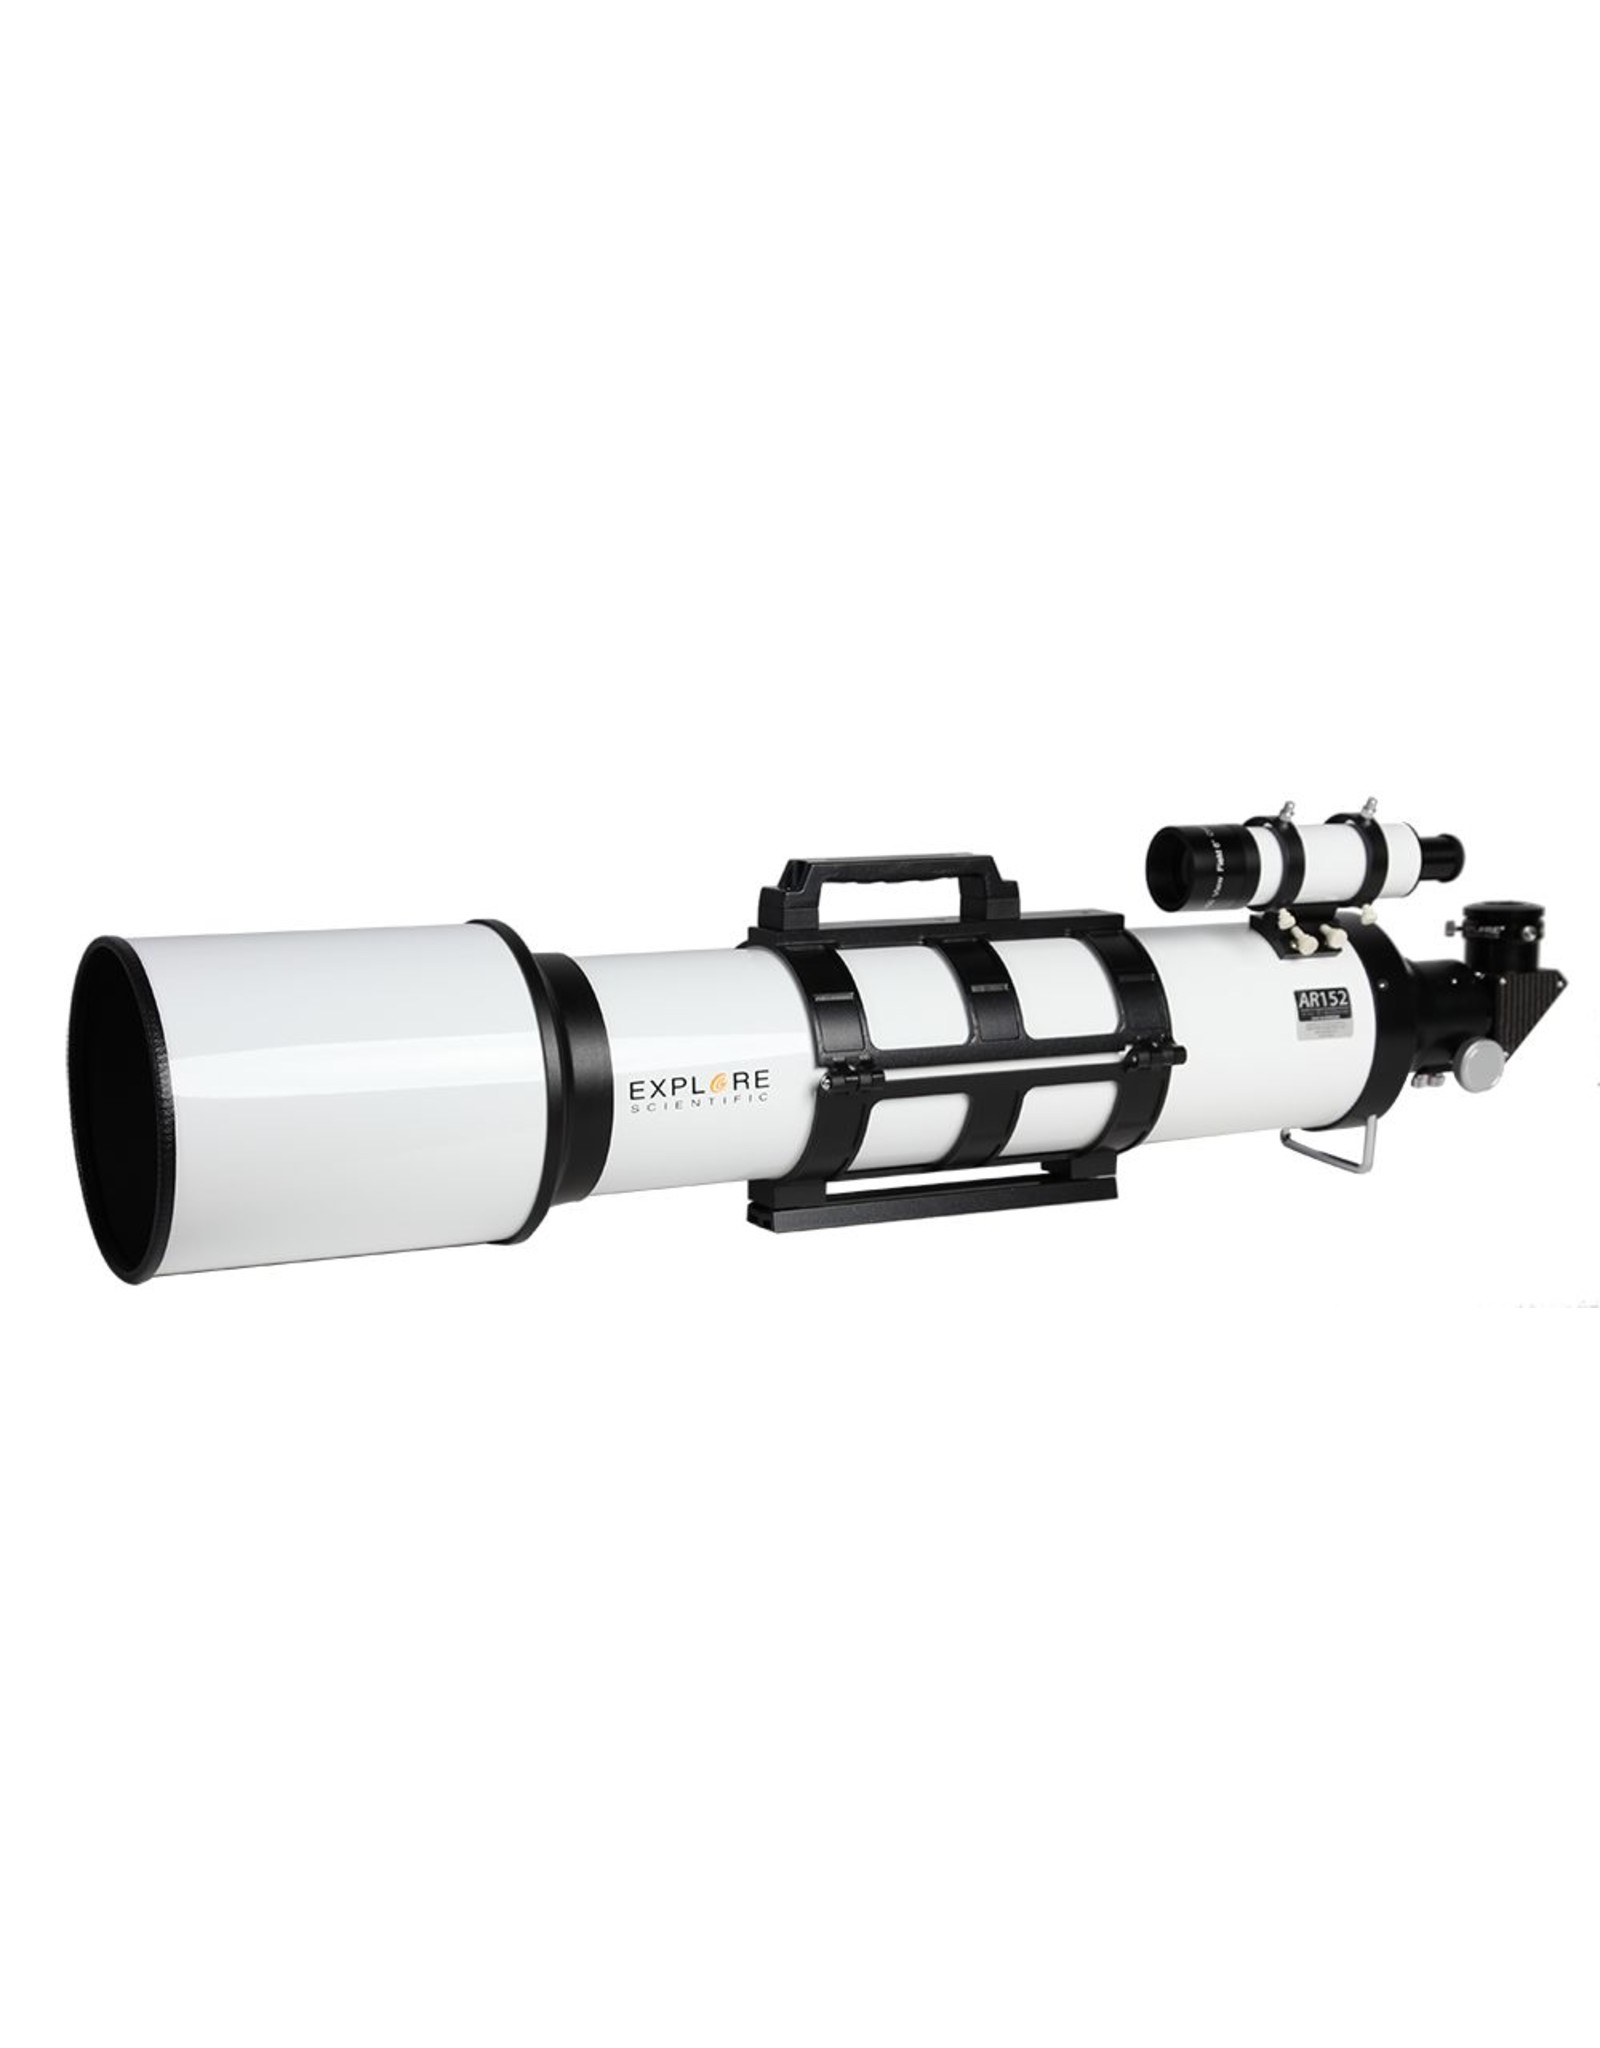 Explore Scientific 152mm f/6.5 Achromatic Refractor with